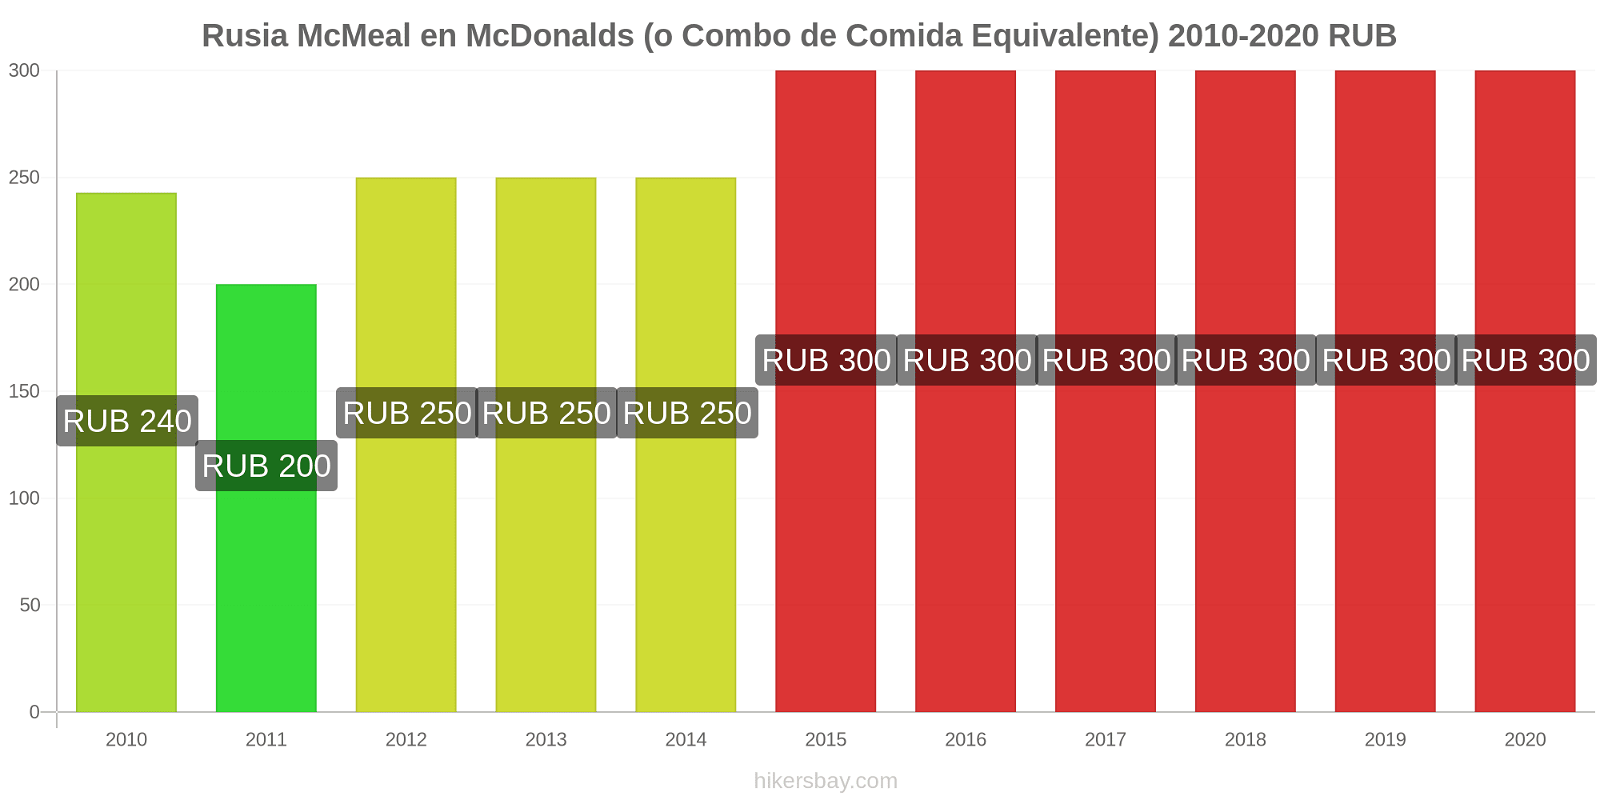 Rusia cambios de precios McMeal en McDonalds (o menú equivalente) hikersbay.com